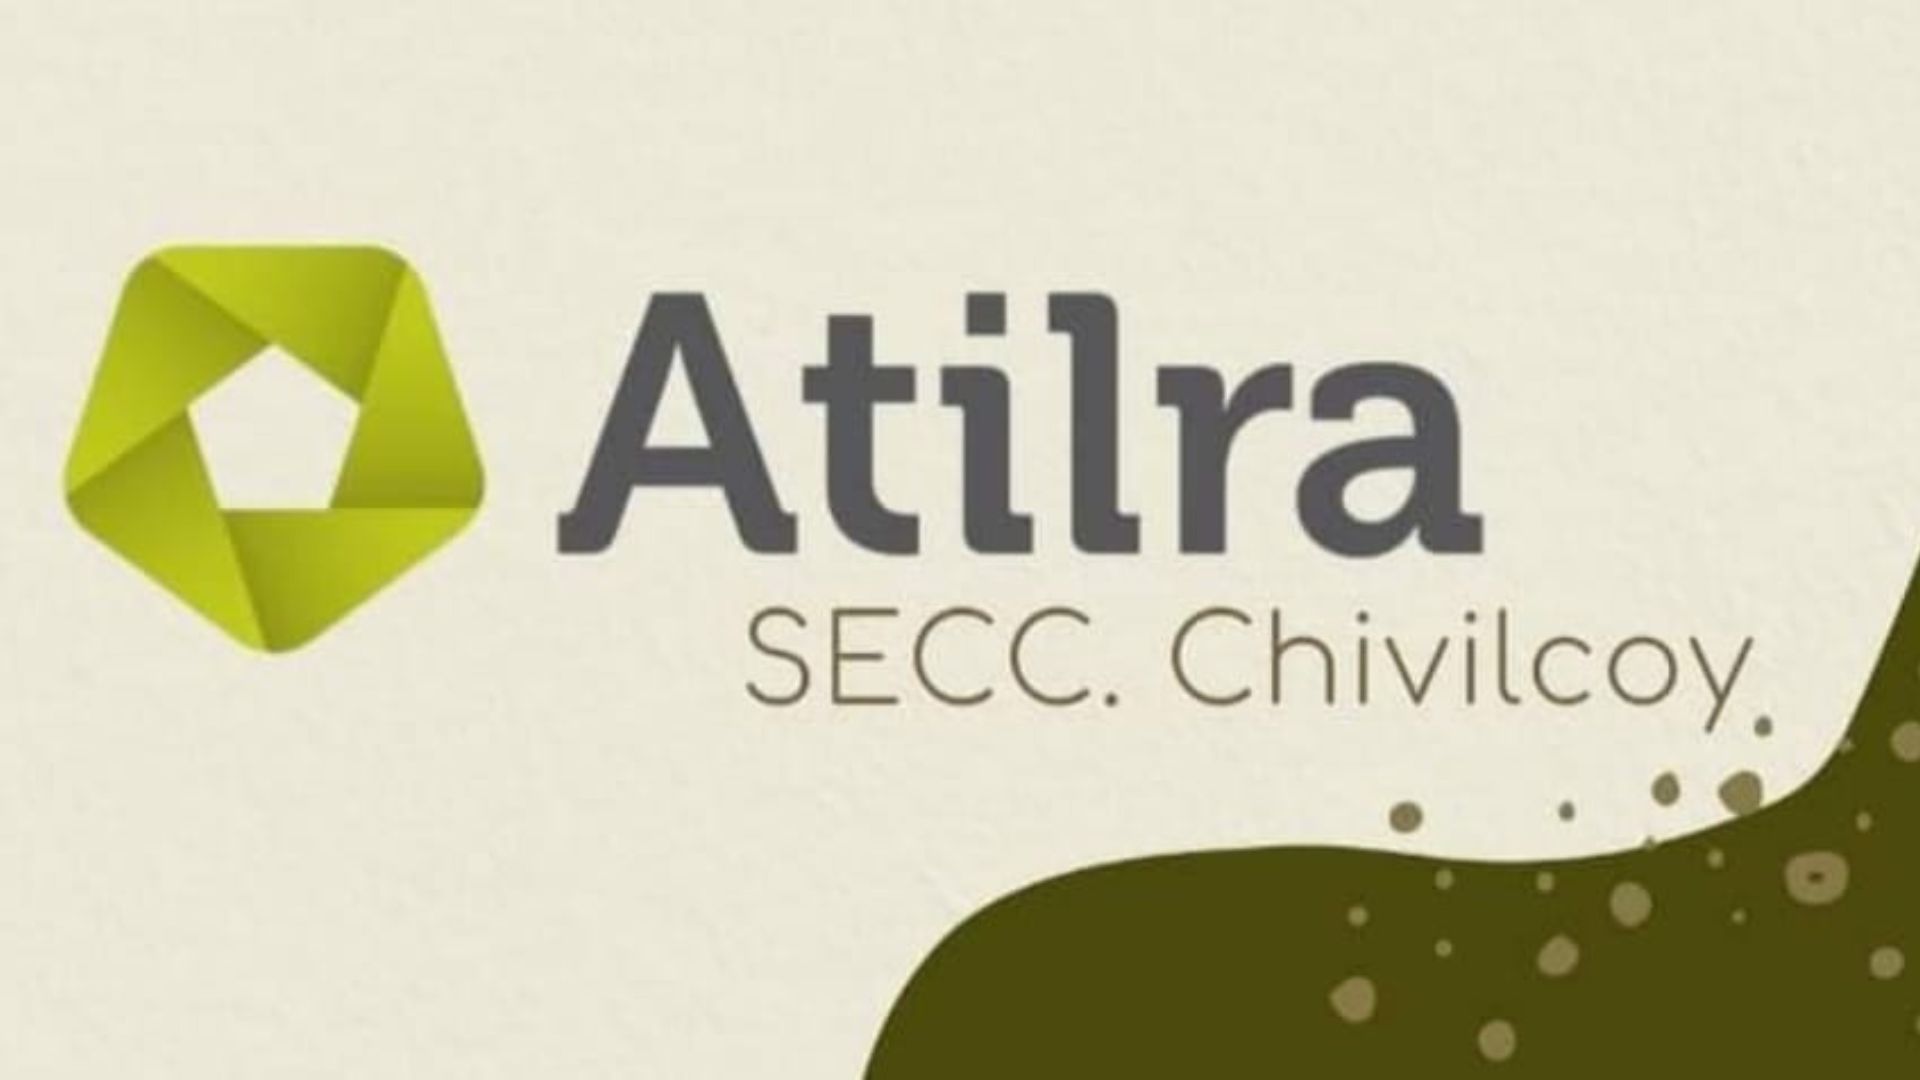 Atilra - Seccional Chivilcoy Chivilcoy